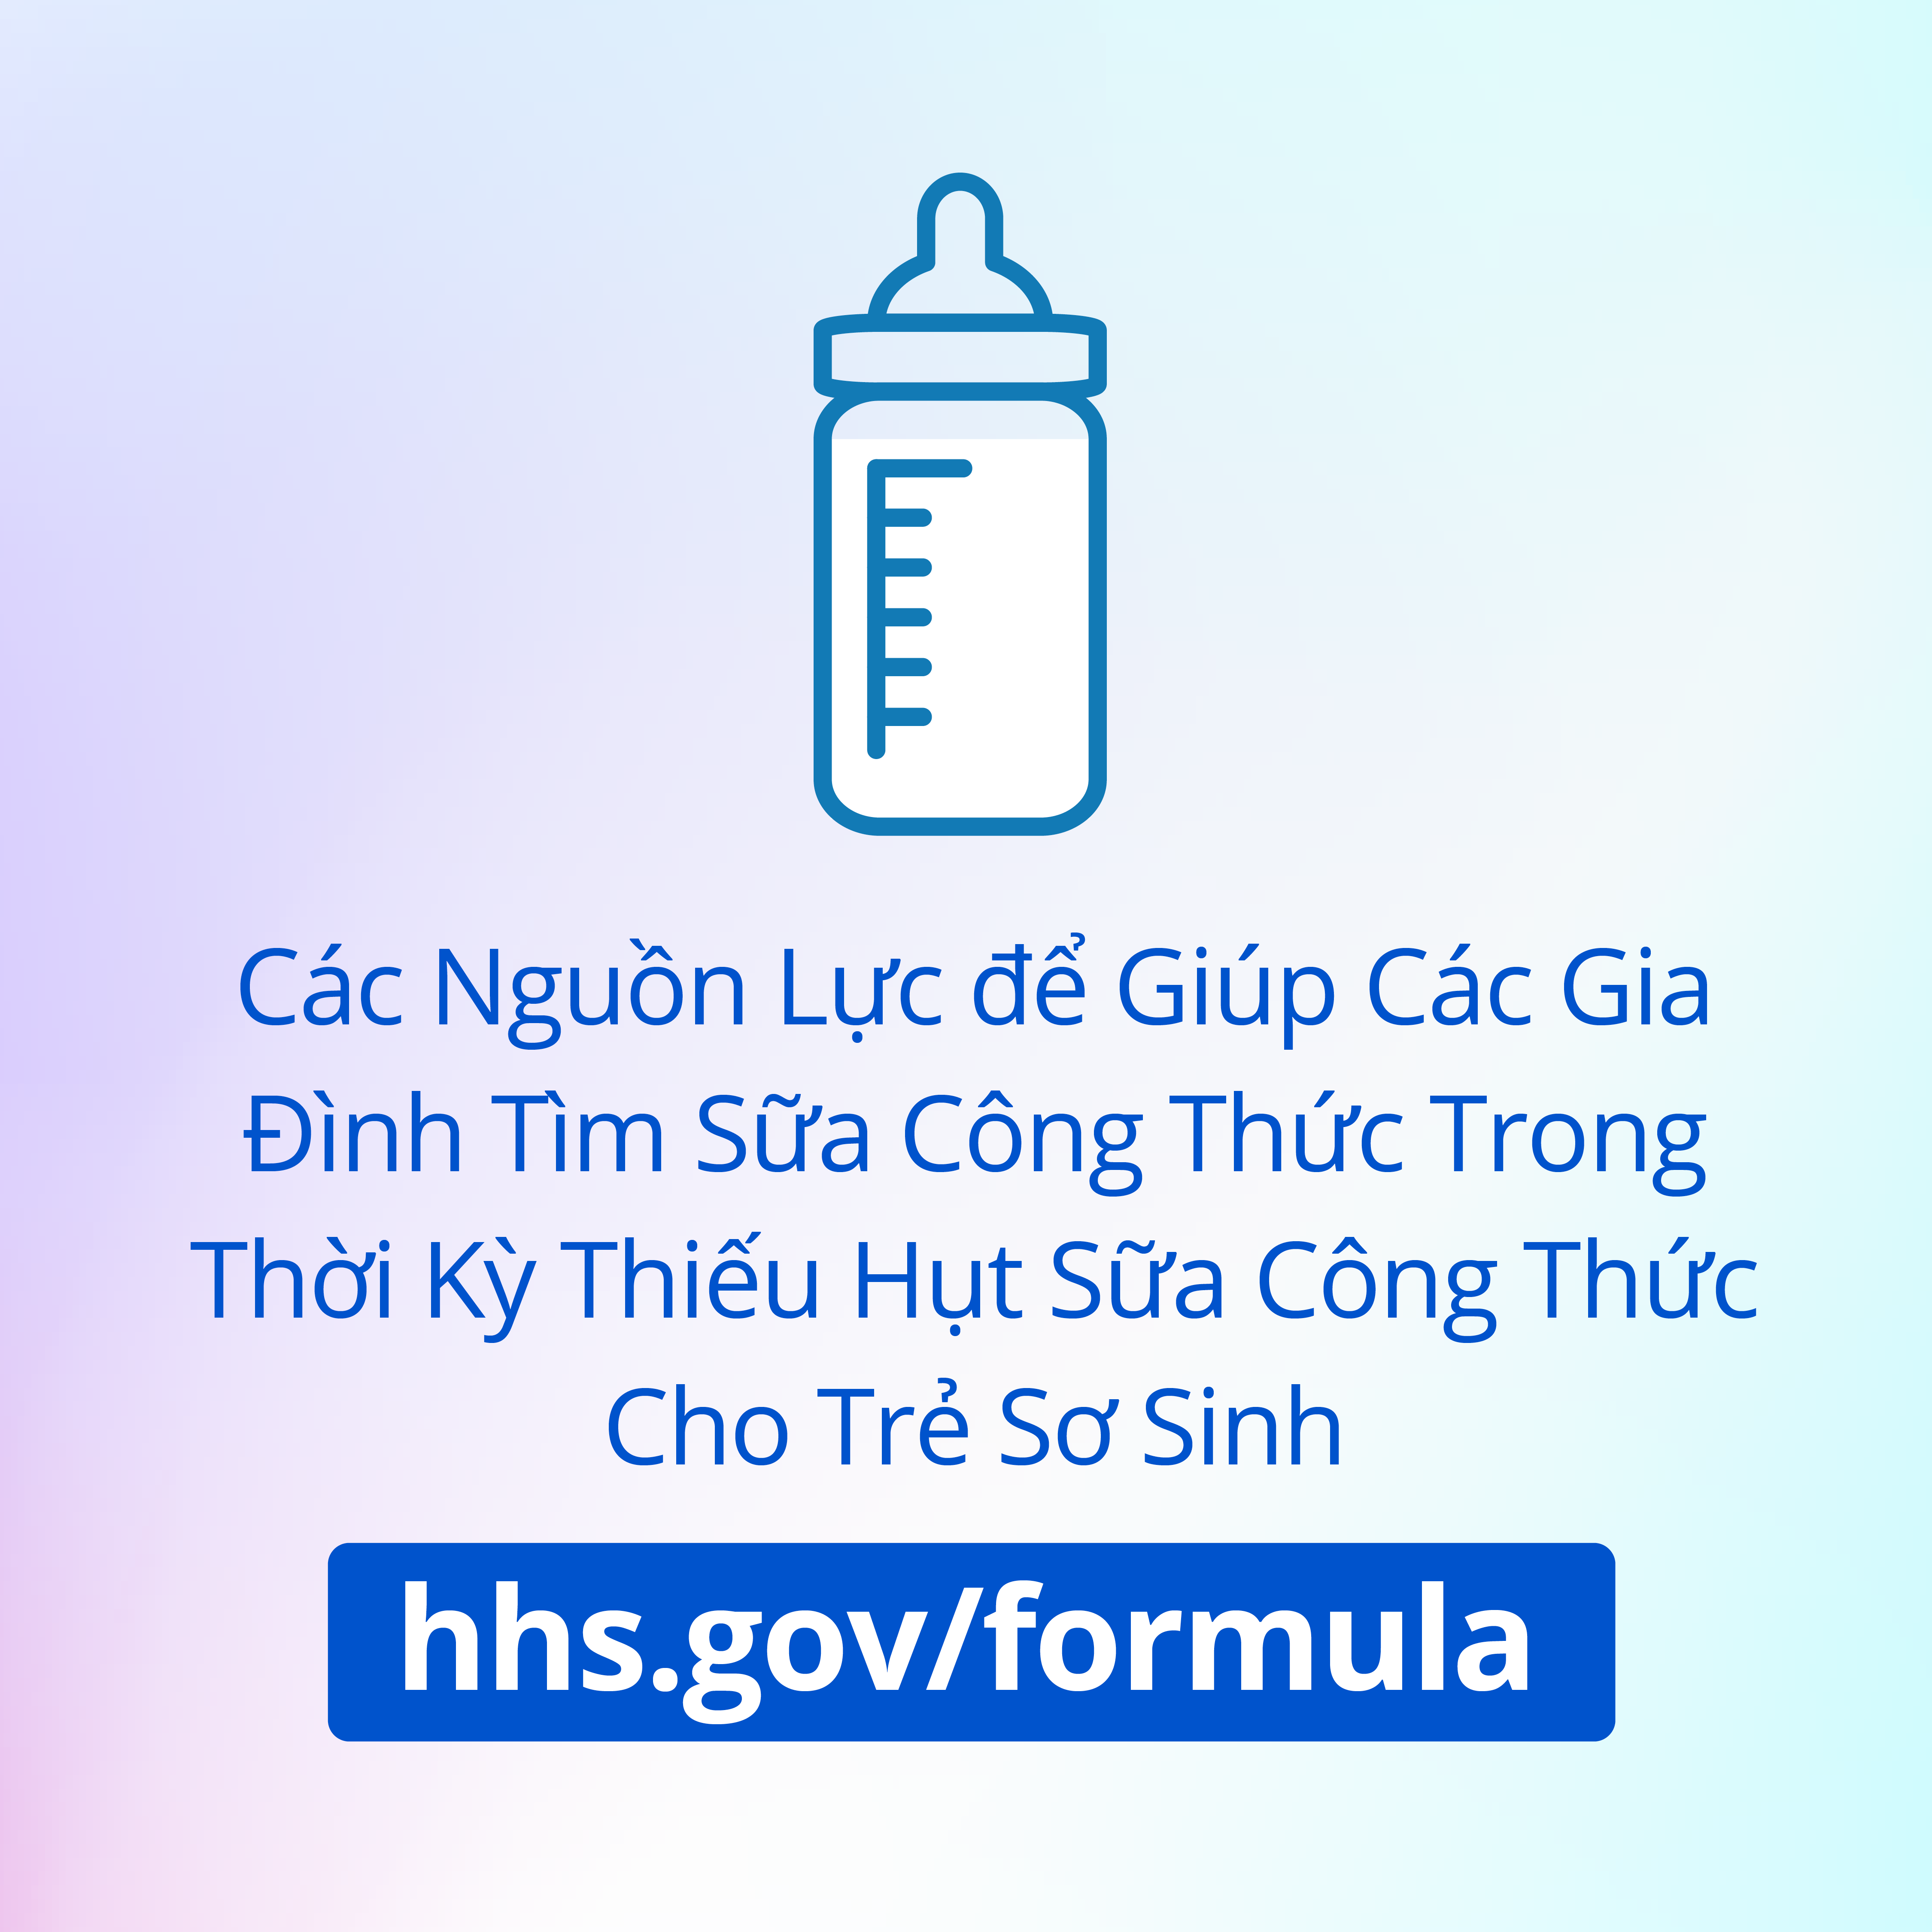 Họa hình quảng cáo trên instagram để tìm các nguồn lực hỗ trợ sự thiếu hụt sữa công thức cho trẻ sơ sinh tại hhs.gov/formula bằng tiếng Anh.